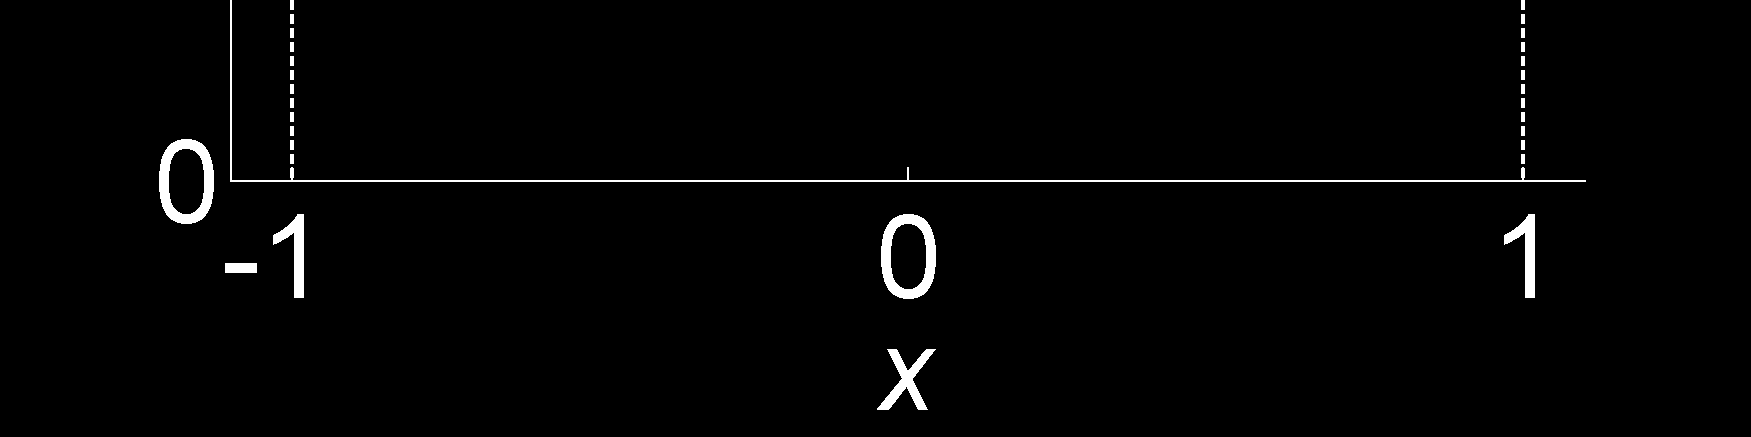 ;()= A + w przedziale 1,1. W tym przykładzie również konieczne jest wykonanie dwóch pomiarów. Błąd bezwzględny pomiaru w każdym punkcie jest stały, równy 0,25.